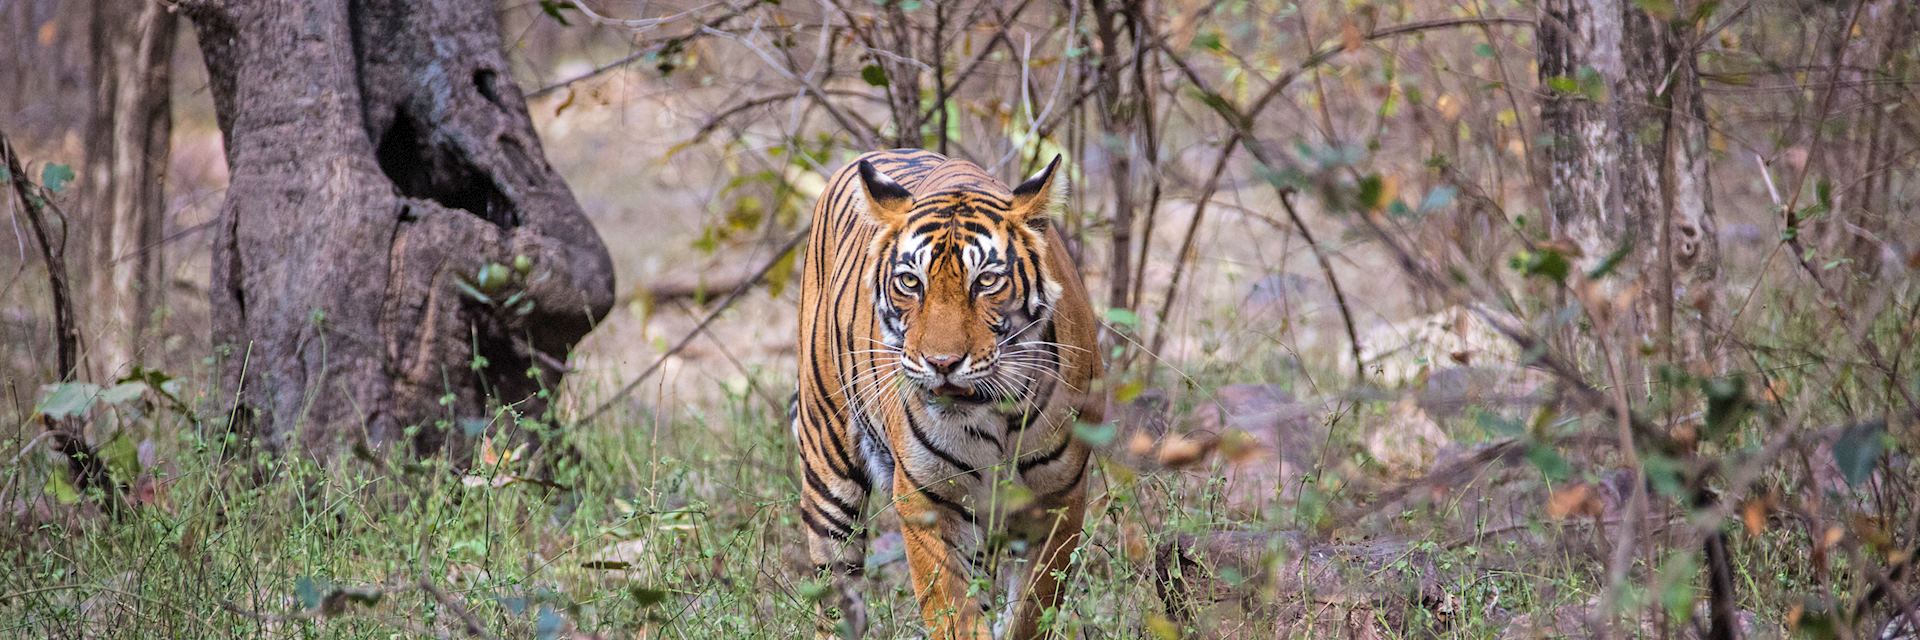 Bengal tiger in Rajasthan